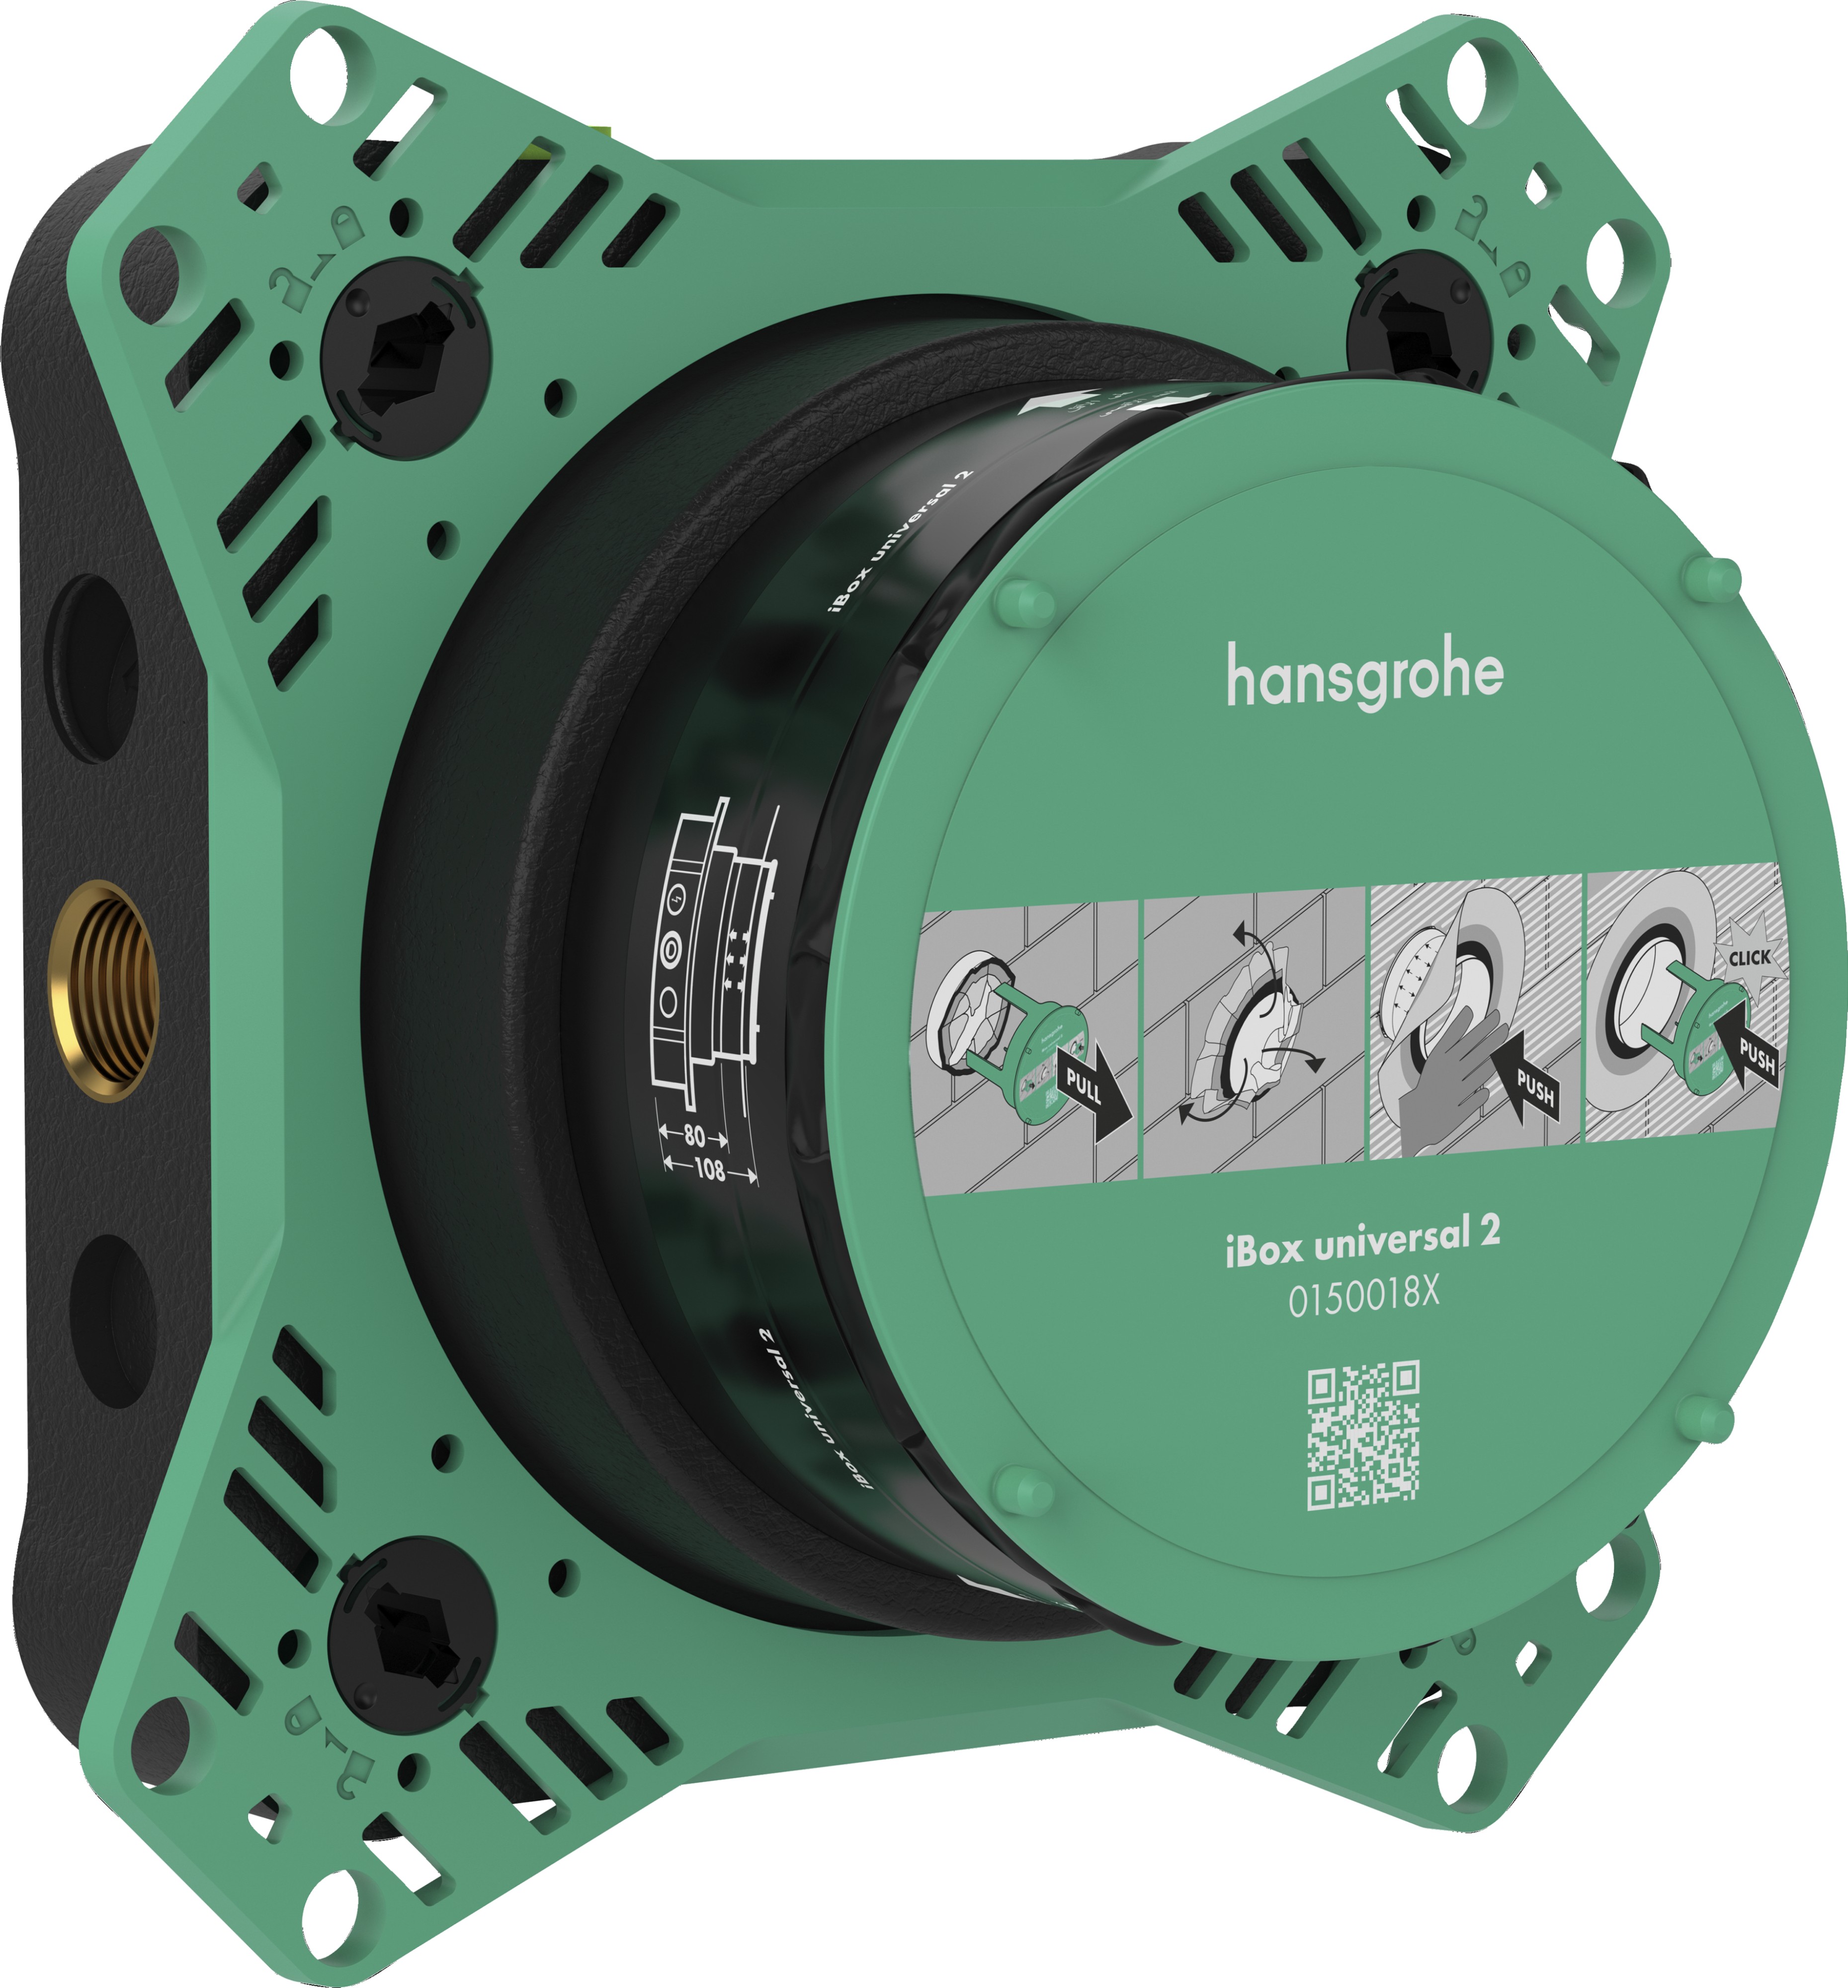 Corp Incastrat Hansgrohe Ibox Universal 2 Pentru Baterii Incastrate